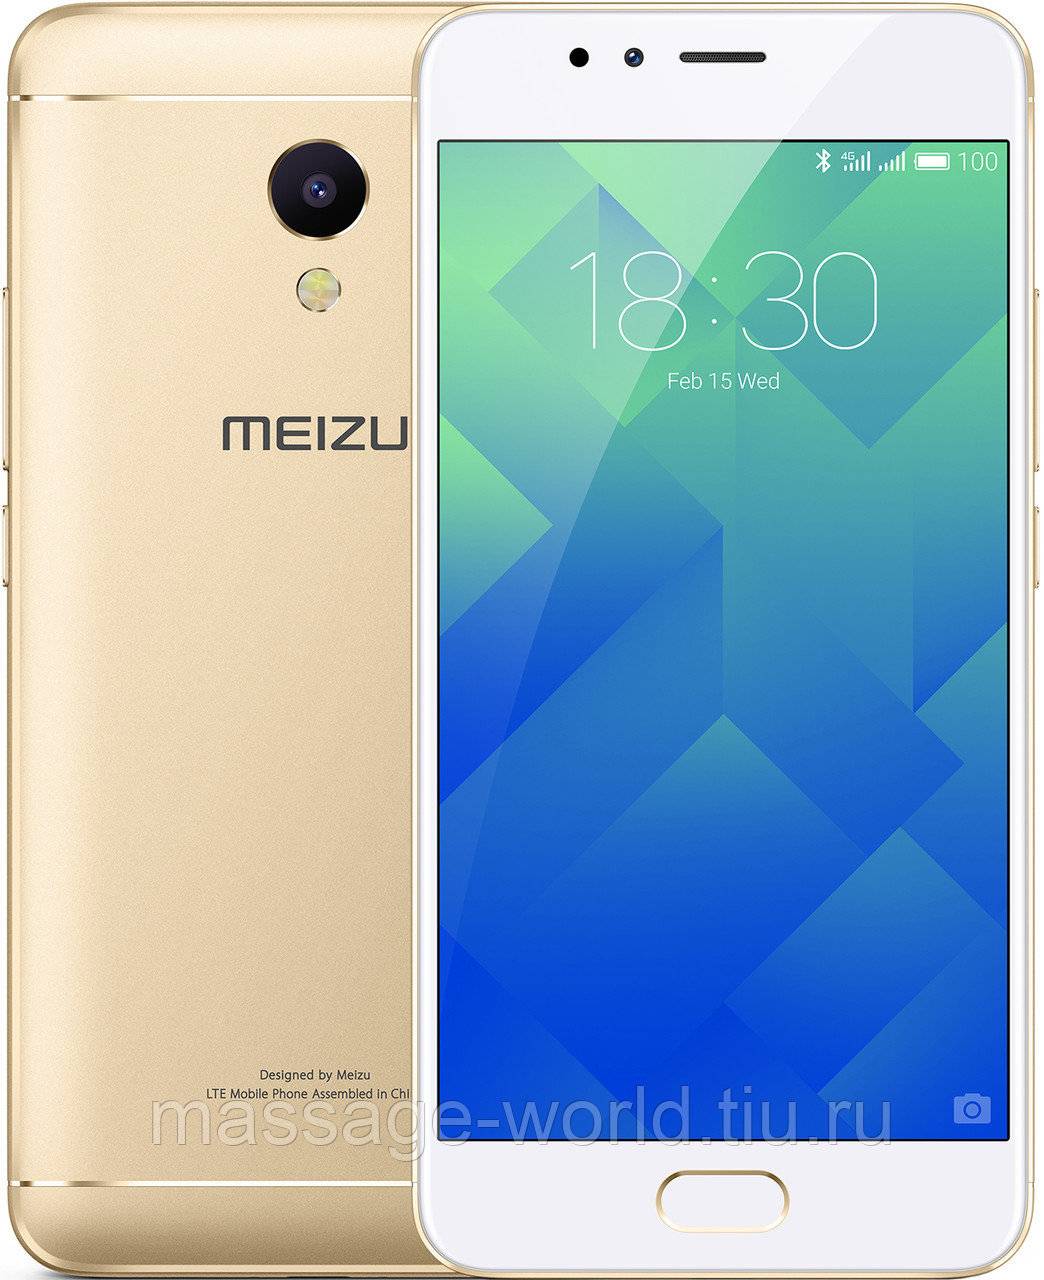 Сравнение meizu m5s и meizu m5 — какой смартфон лучше